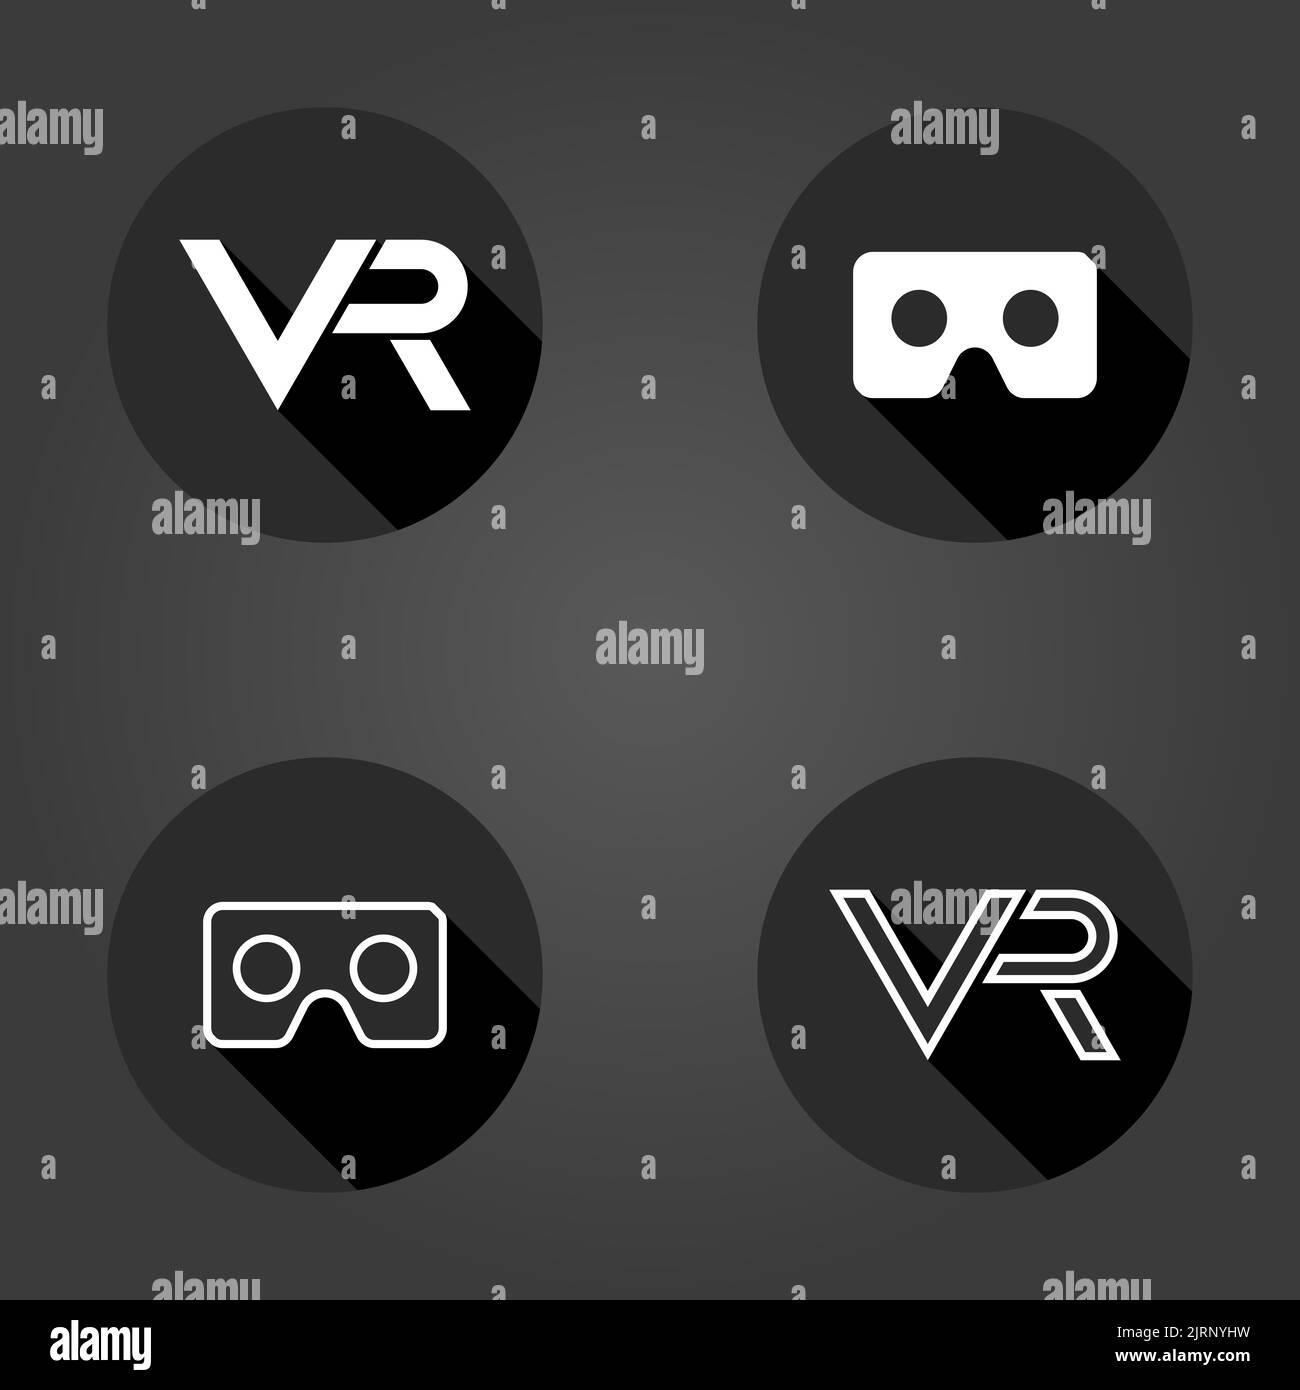 Icone in bianco e nero con logo VR in cerchio. Set di icone piatte con ombre lunghe. Logo di realtà virtuale Foto Stock